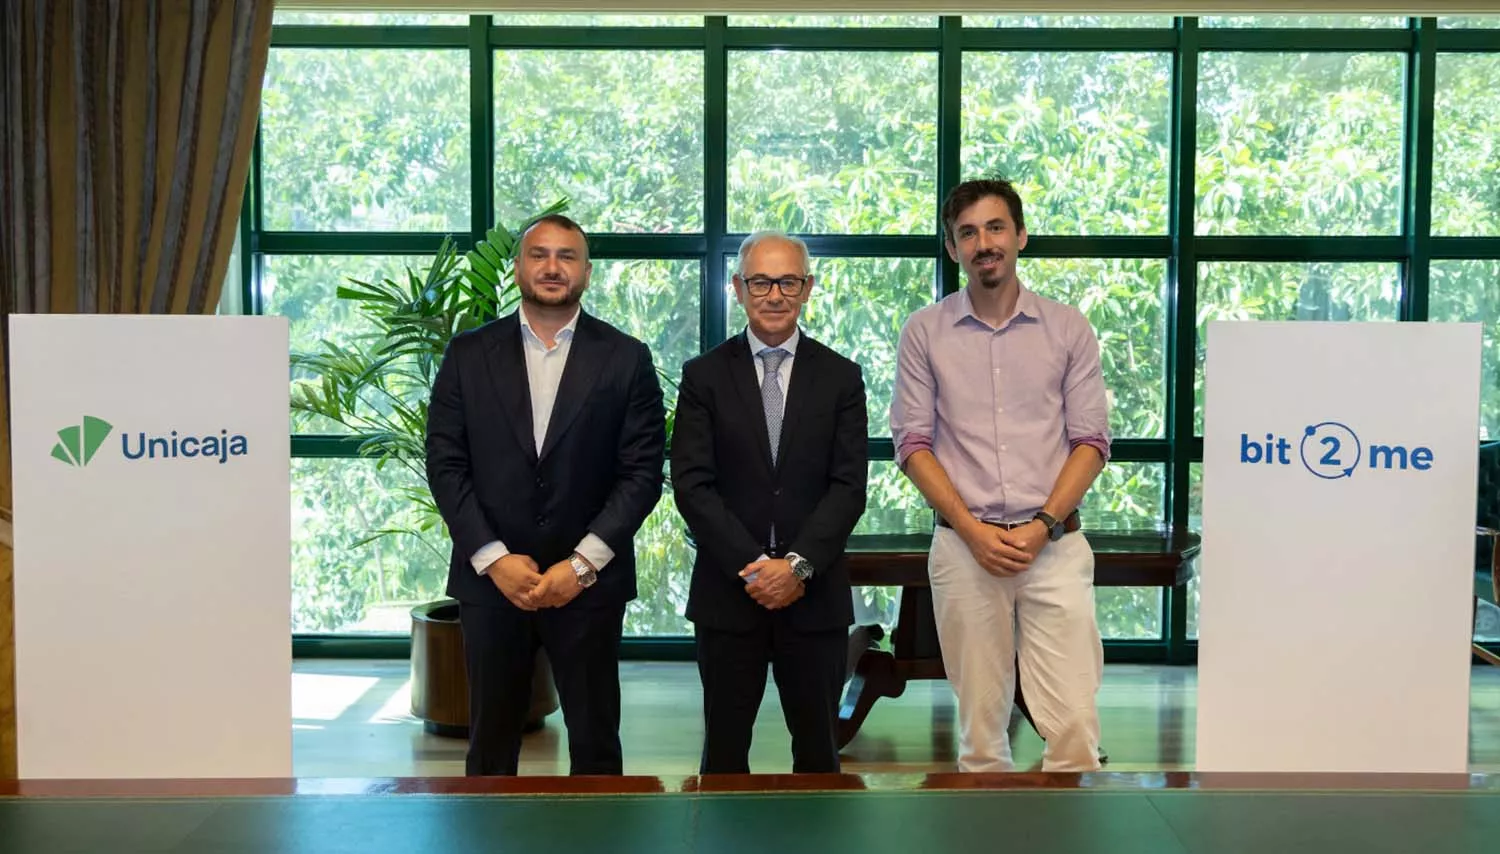 De izquierda a derecha, el COO y co founder de Bit2Me, Andrei Manuel; el CEO de Unicaja, Isidro Rubiales, y el CEO y co-founder de Bit2Me, Leif Ferreira.